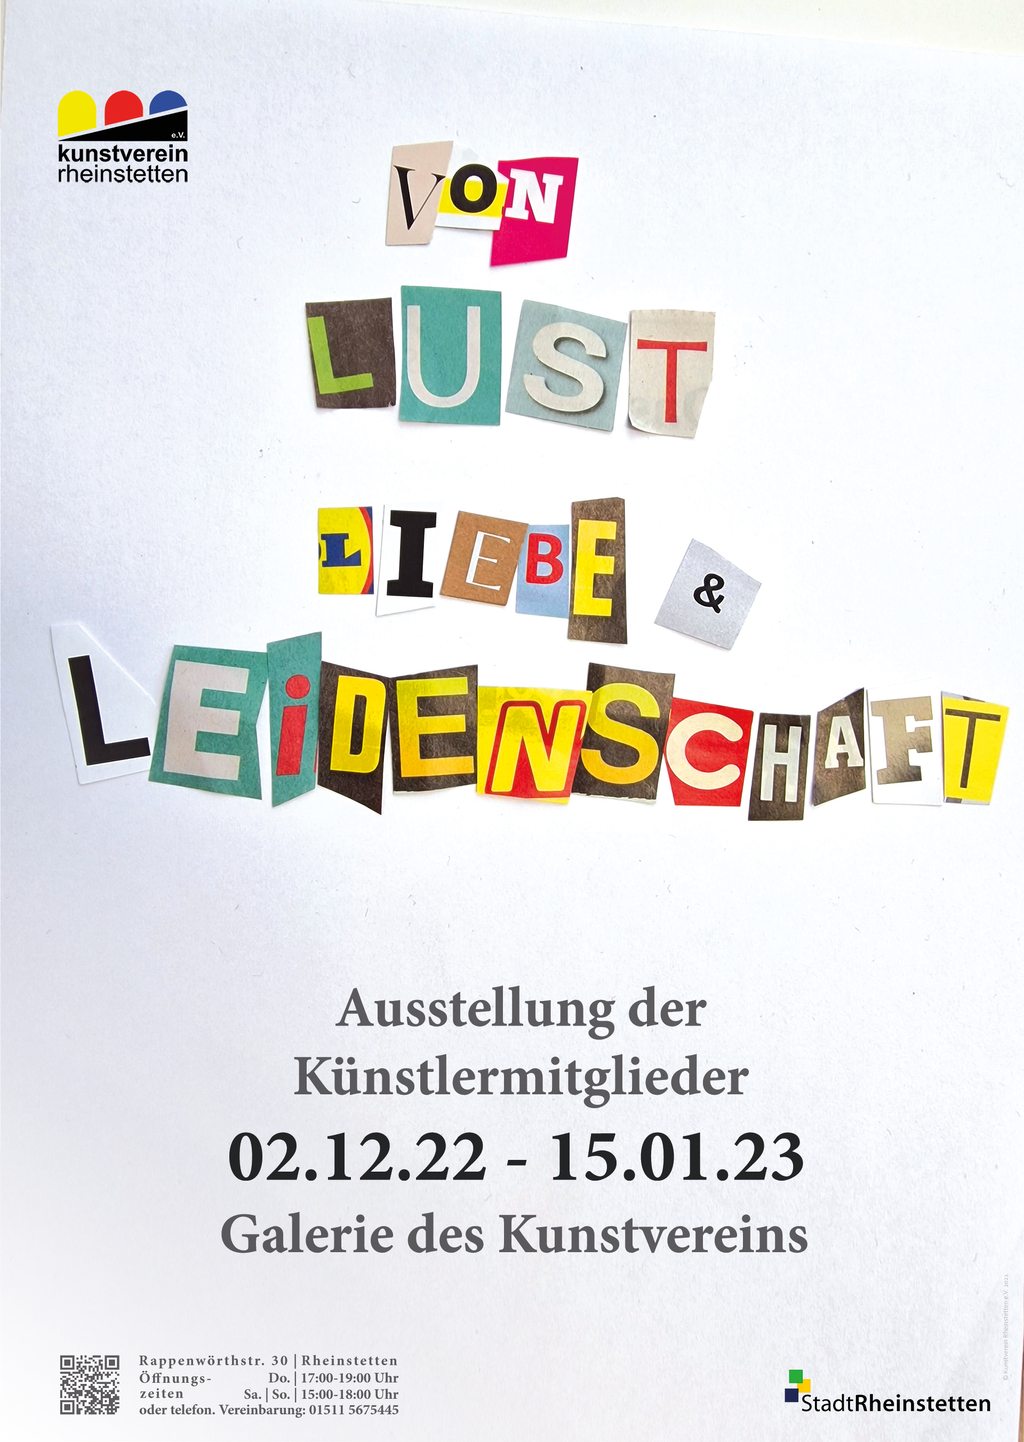 Einladung Ausstellung Von Lust, Liebe & Leidenschaft